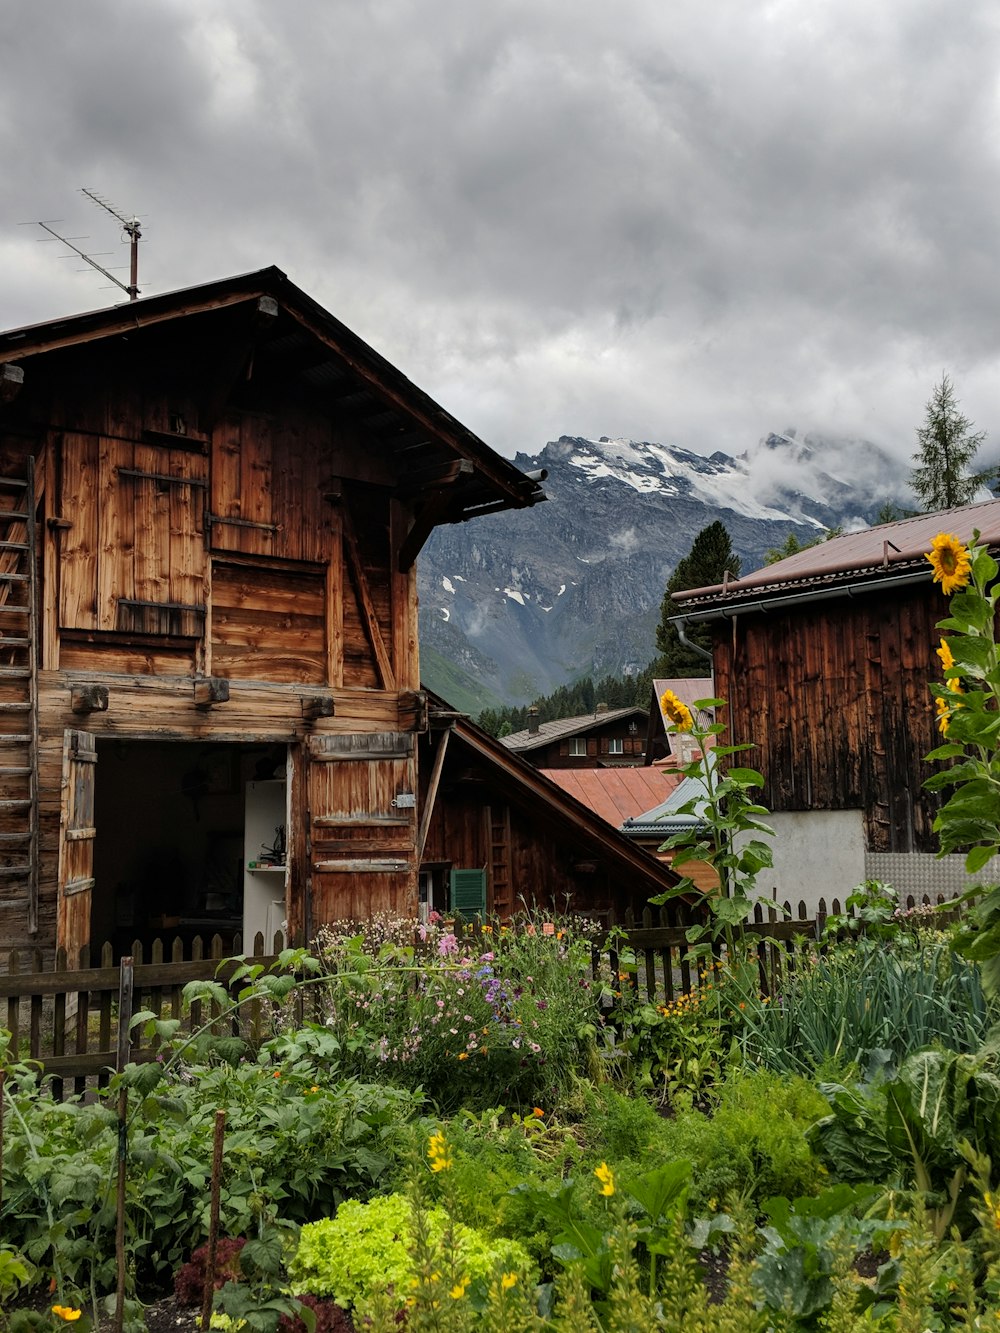 꽃의 정원이 있는 갈색 집의 풍경 사진